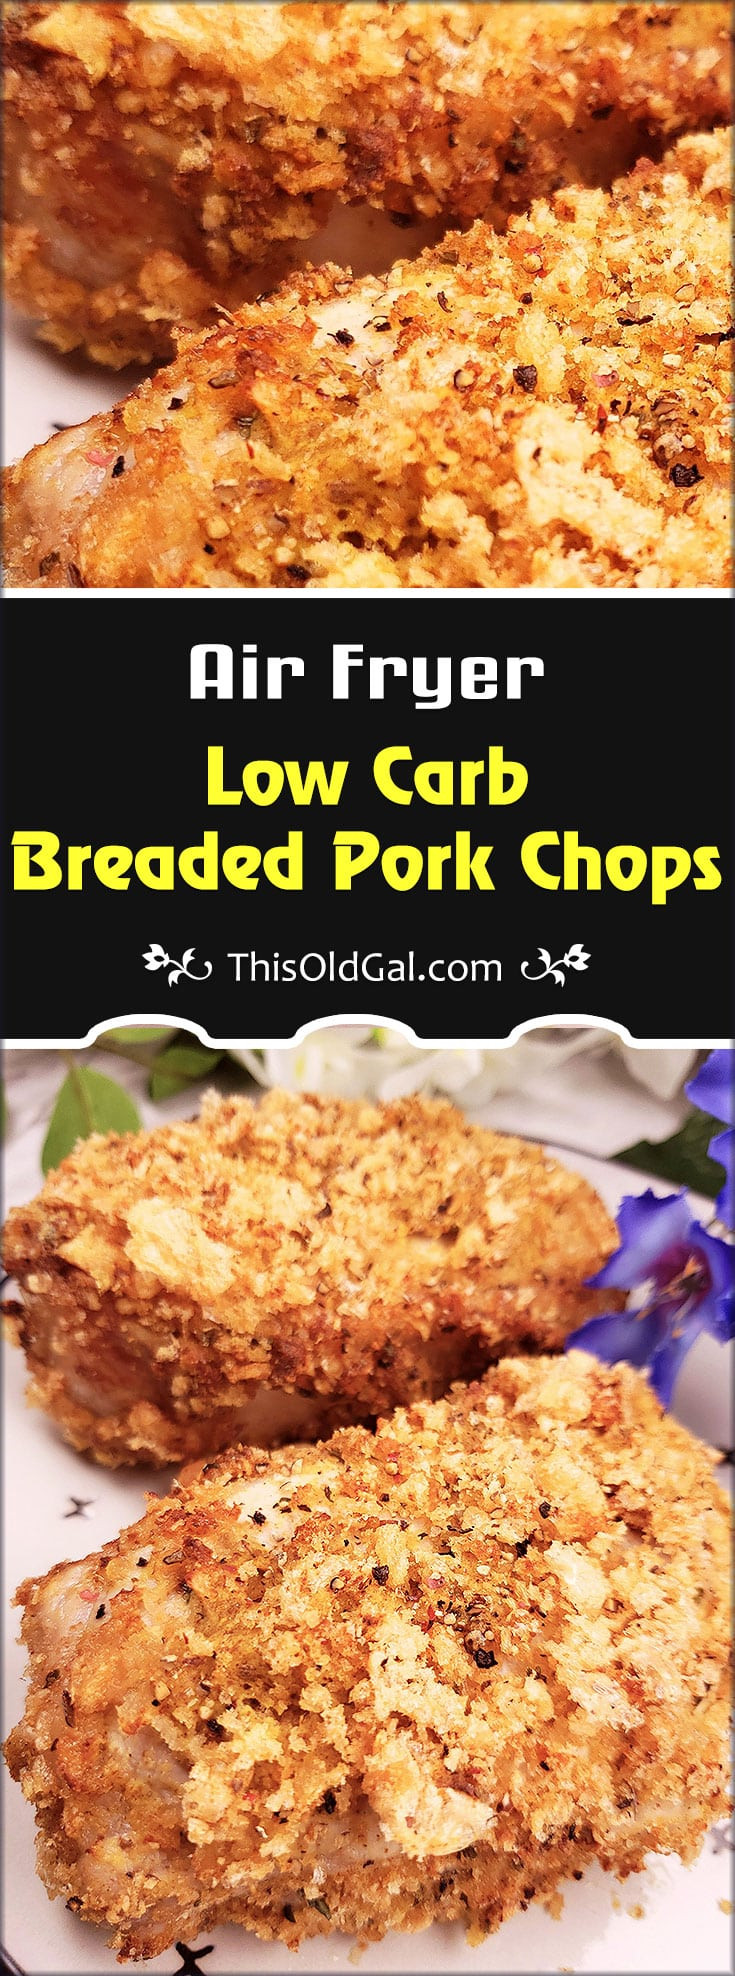 Low Carb Baked Pork Chops
 low carb baked pork chops